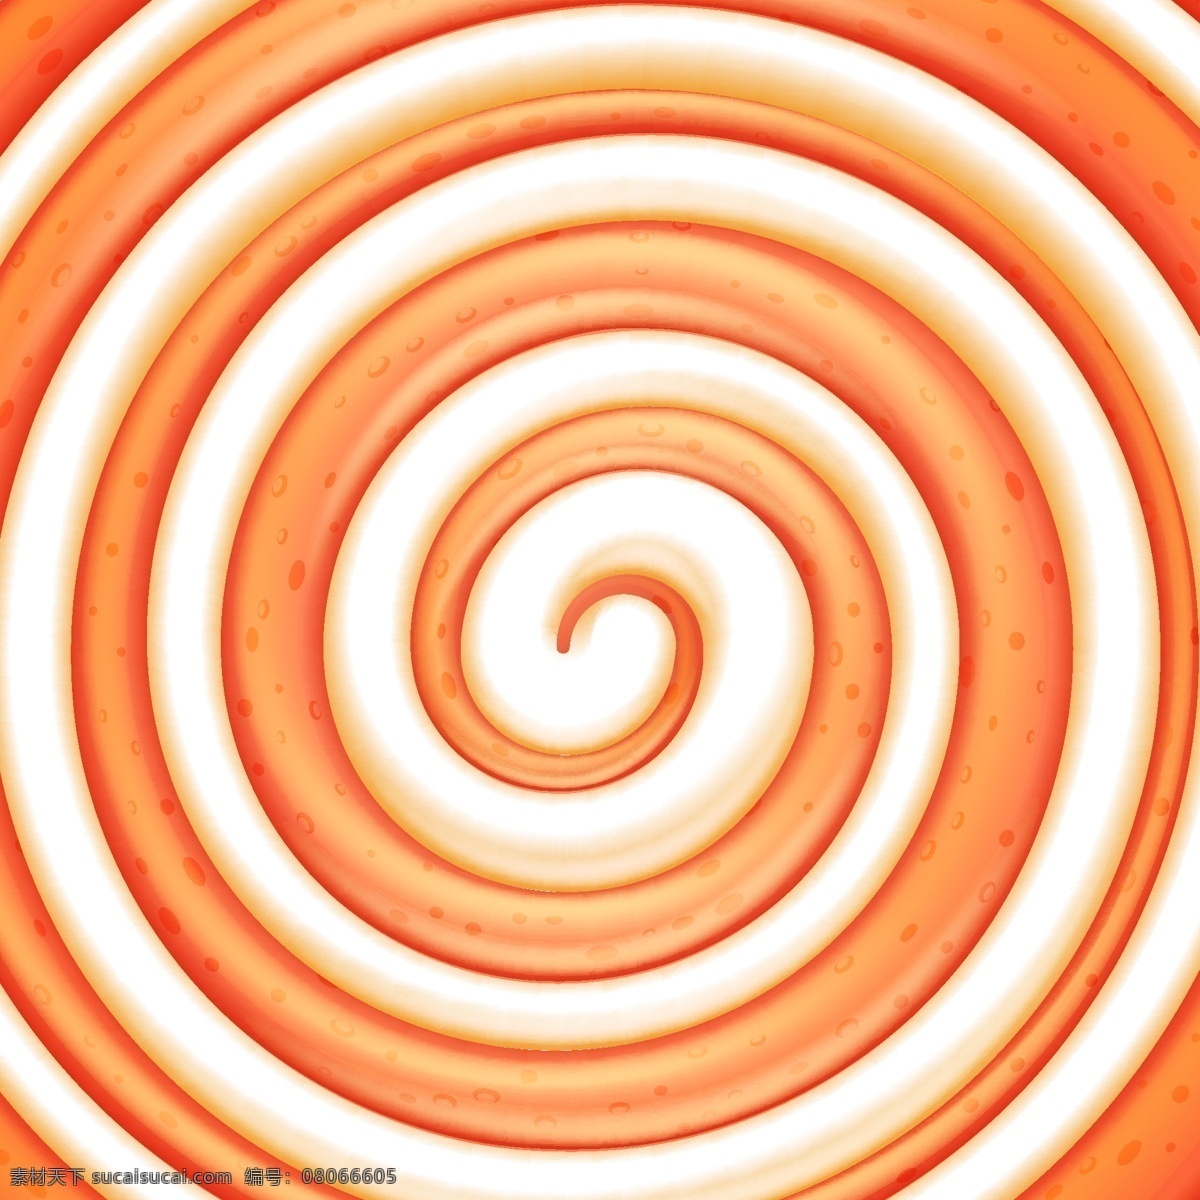 橙色 圆形 旋转 旋涡 糖果 背景 矢量